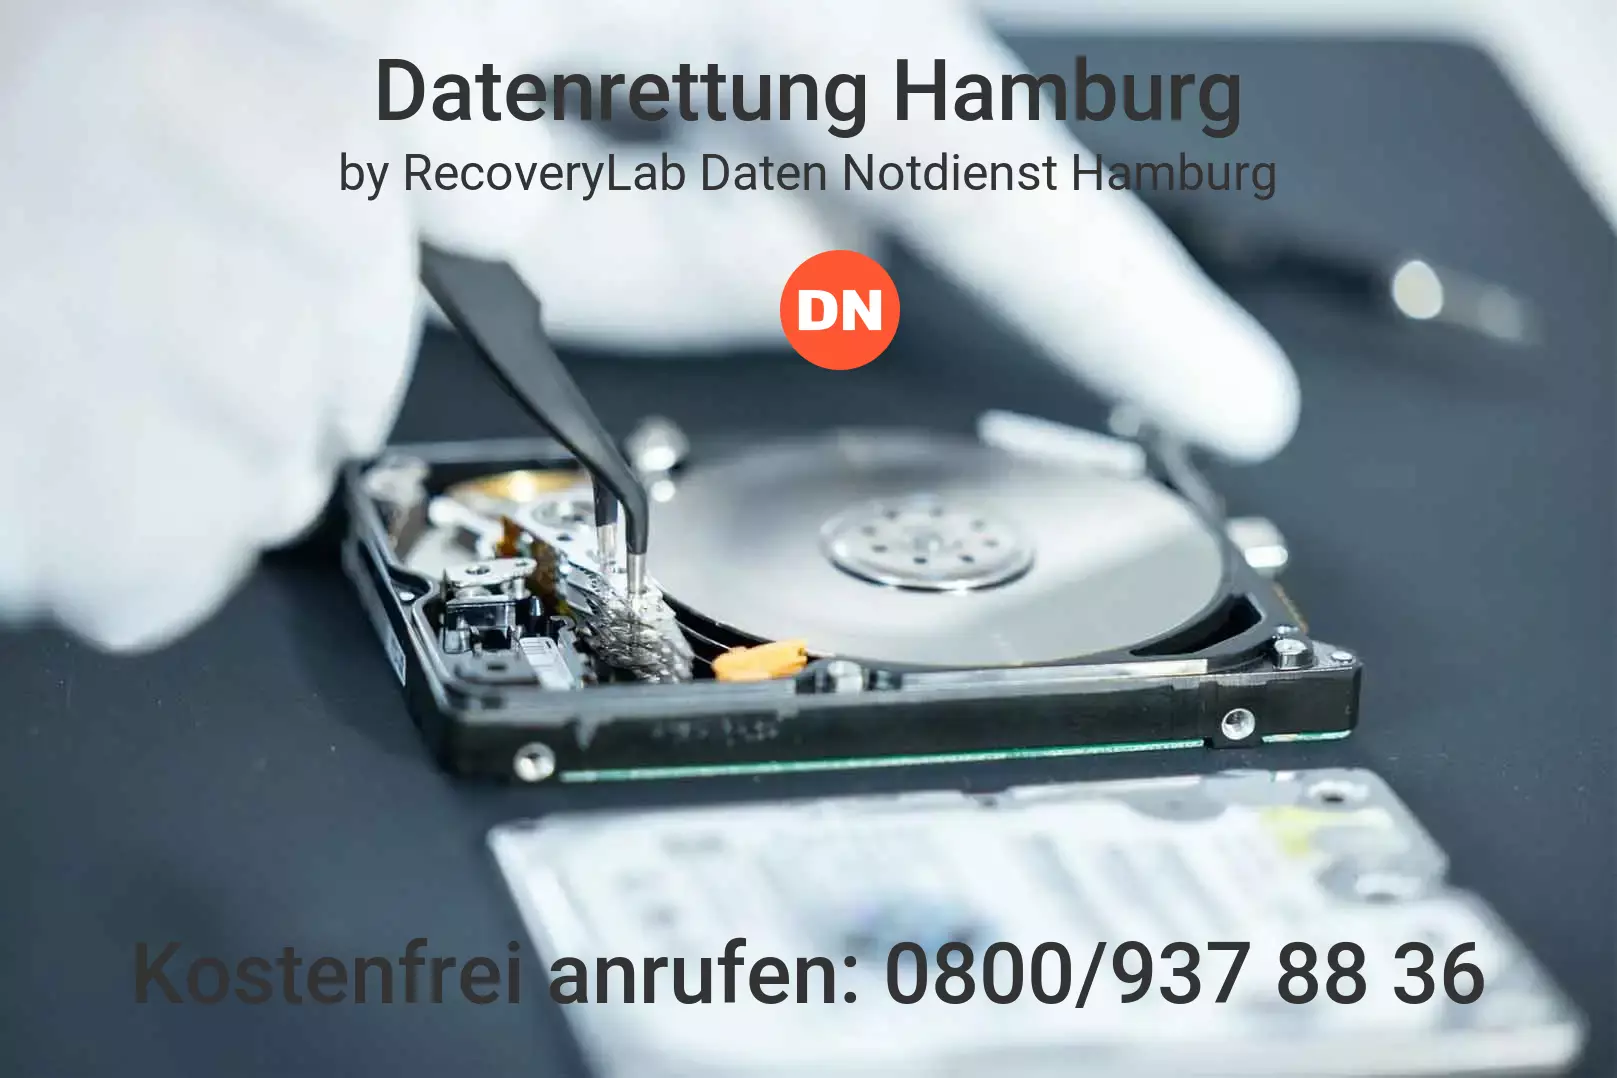 Fallstudie zu erfolgreicher Datenrettung externe Festplatte Hamburg